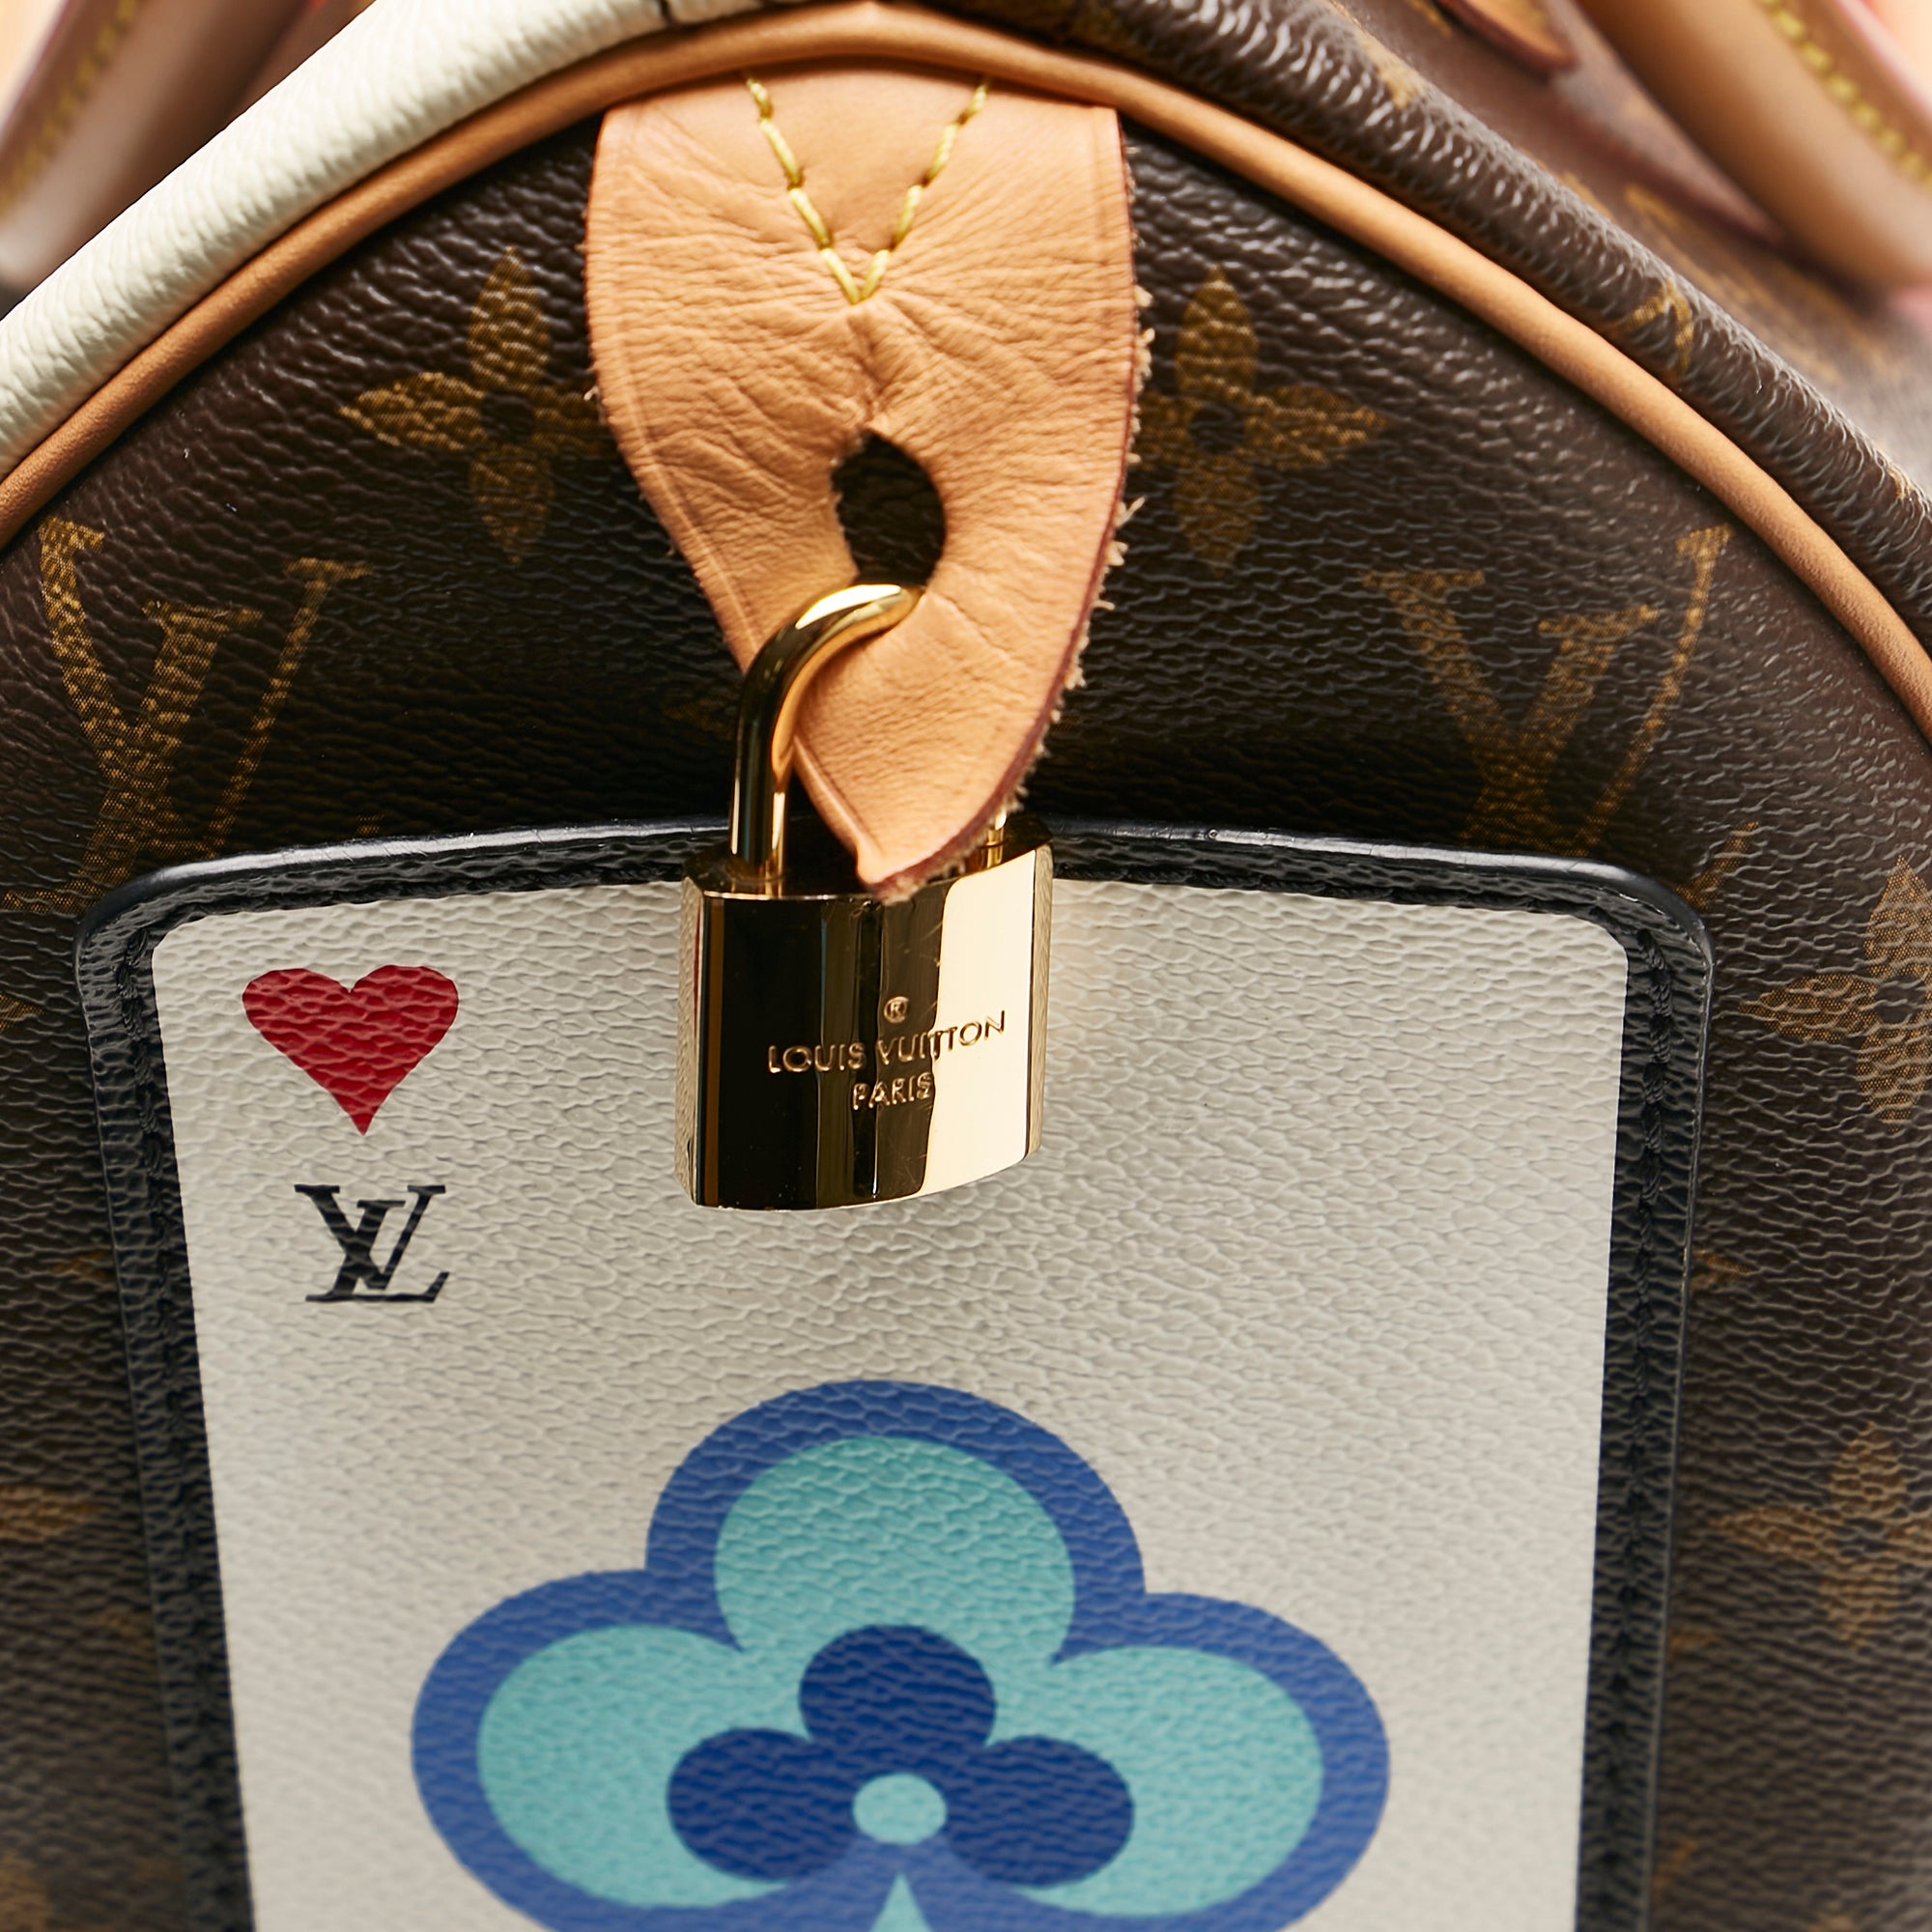 Pre Loved Louis Vuitton Damier Azur Speedy 25